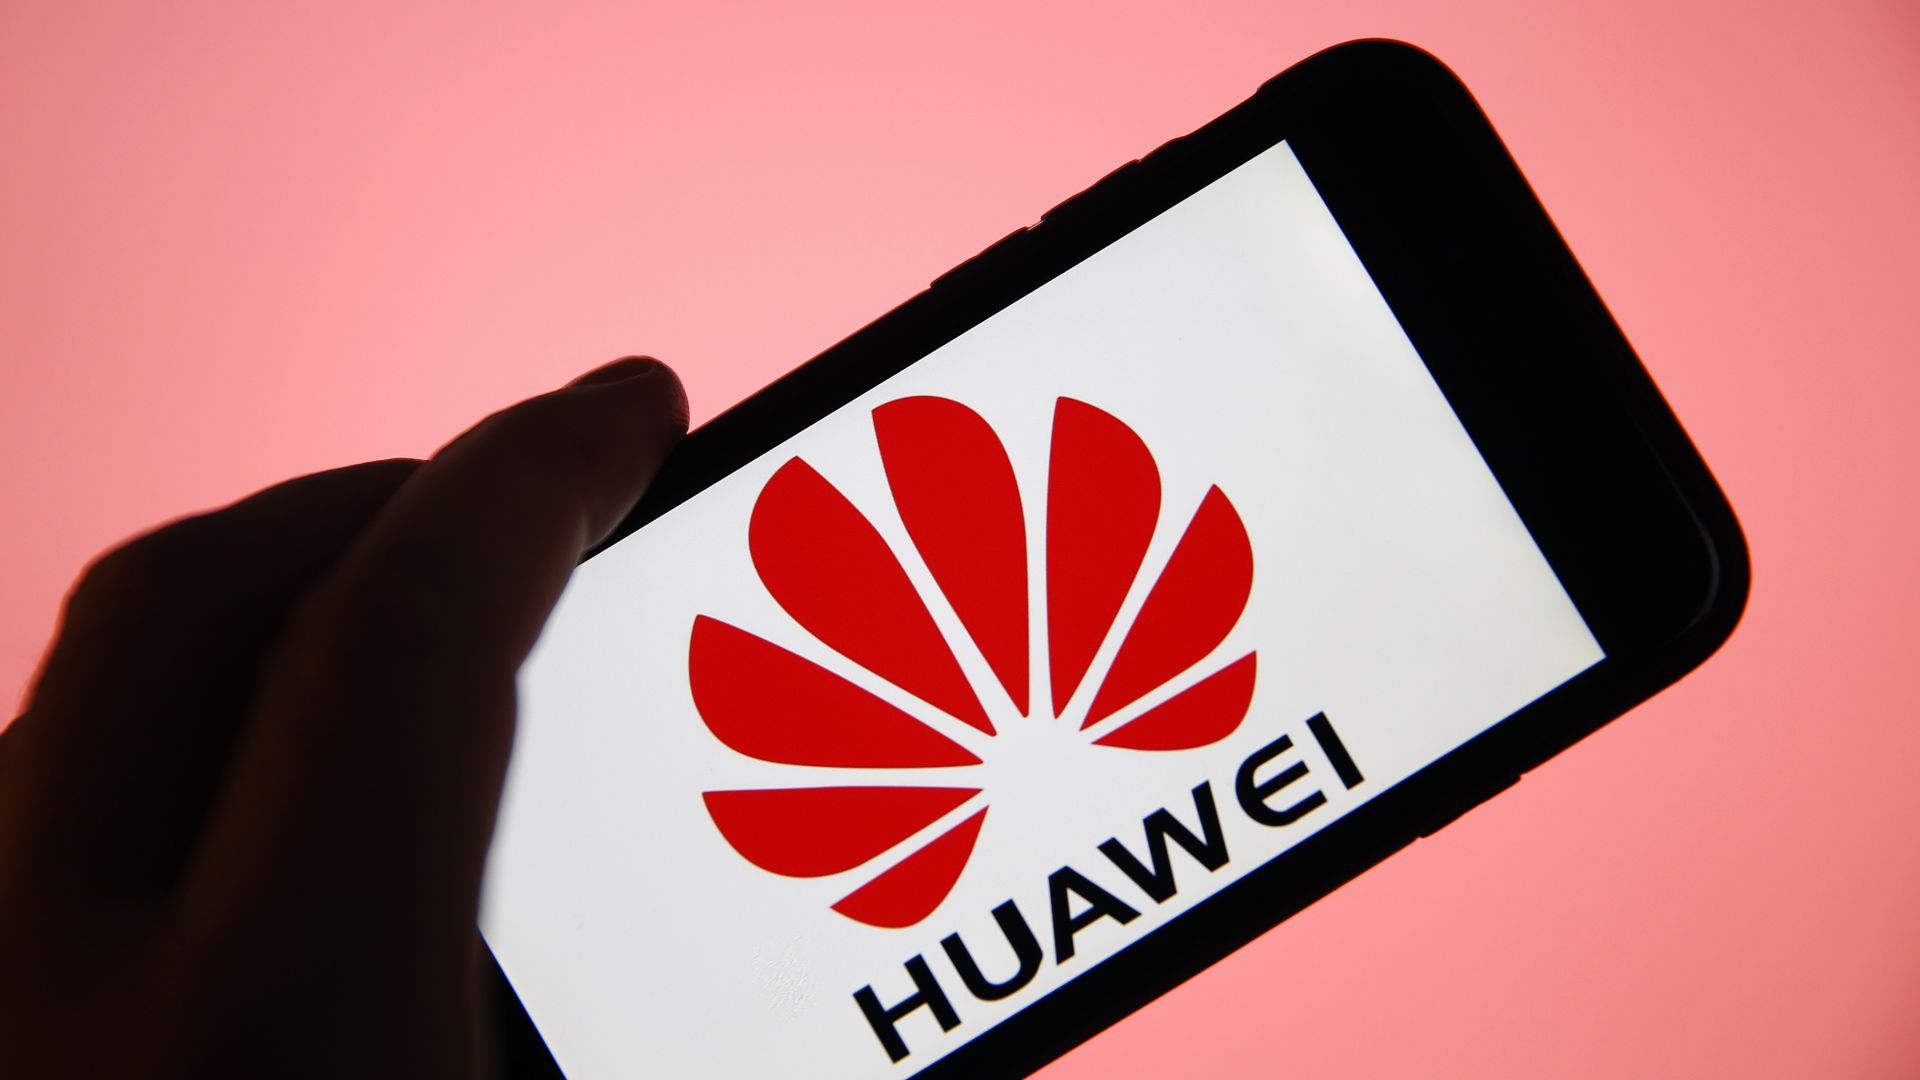 The Huawei logo